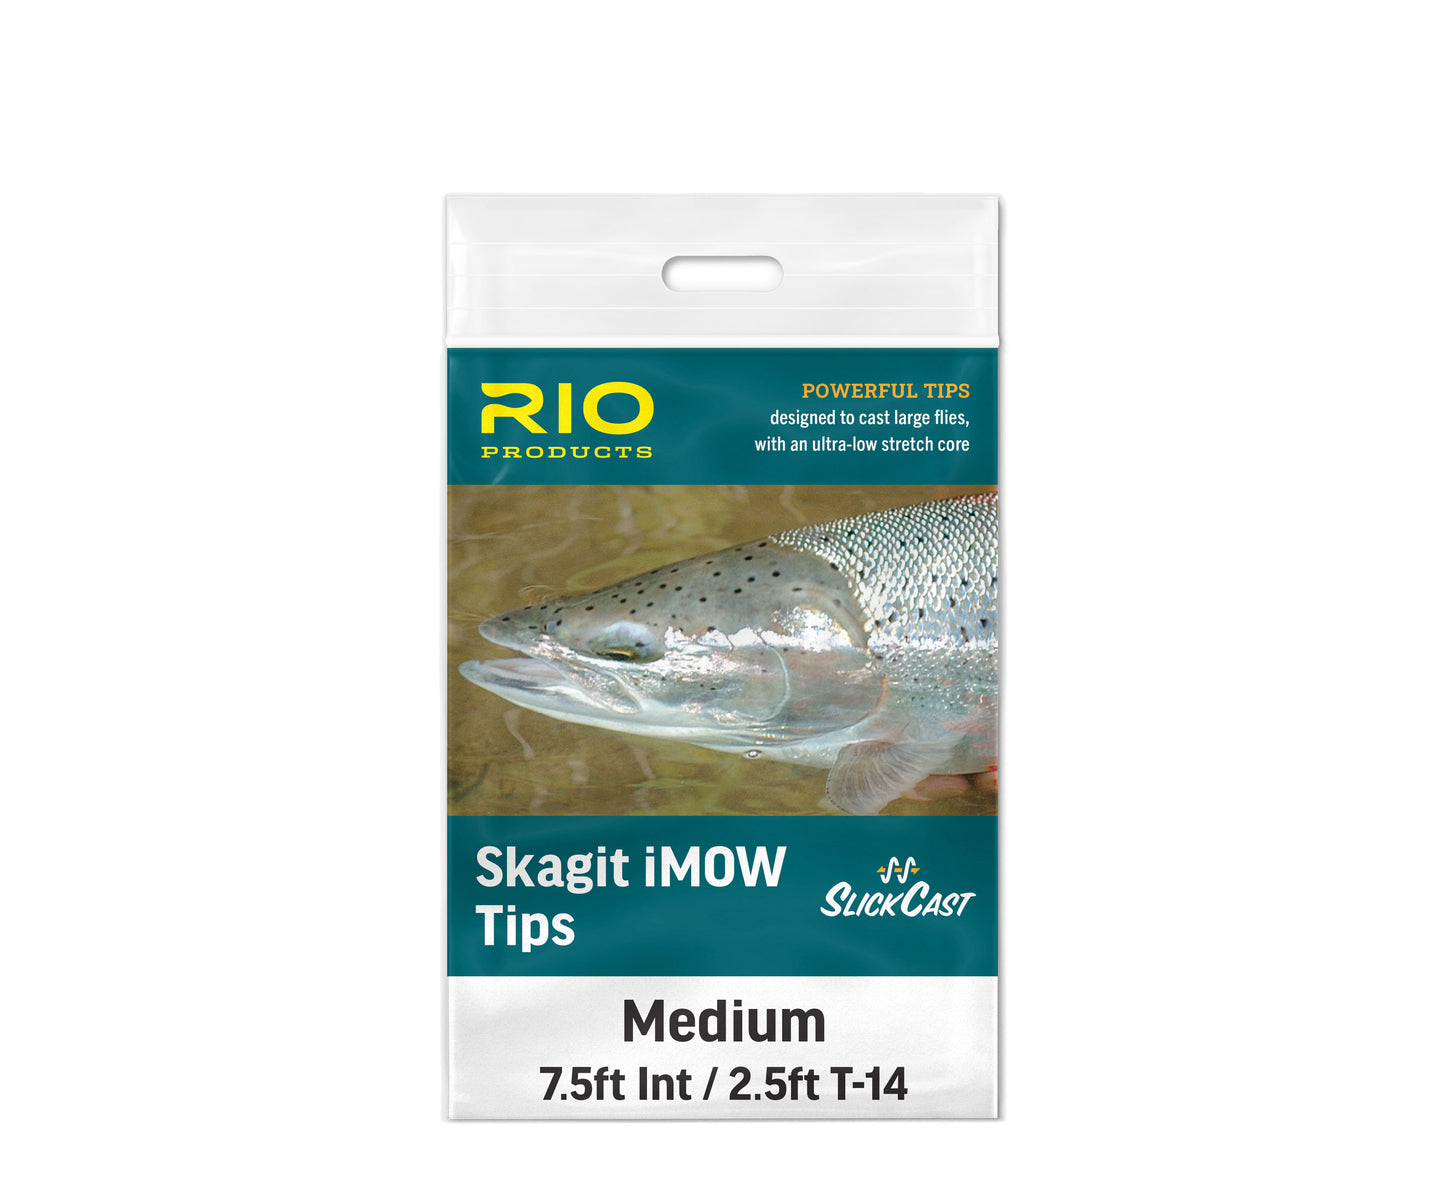 Rio Skagit iMow Tips